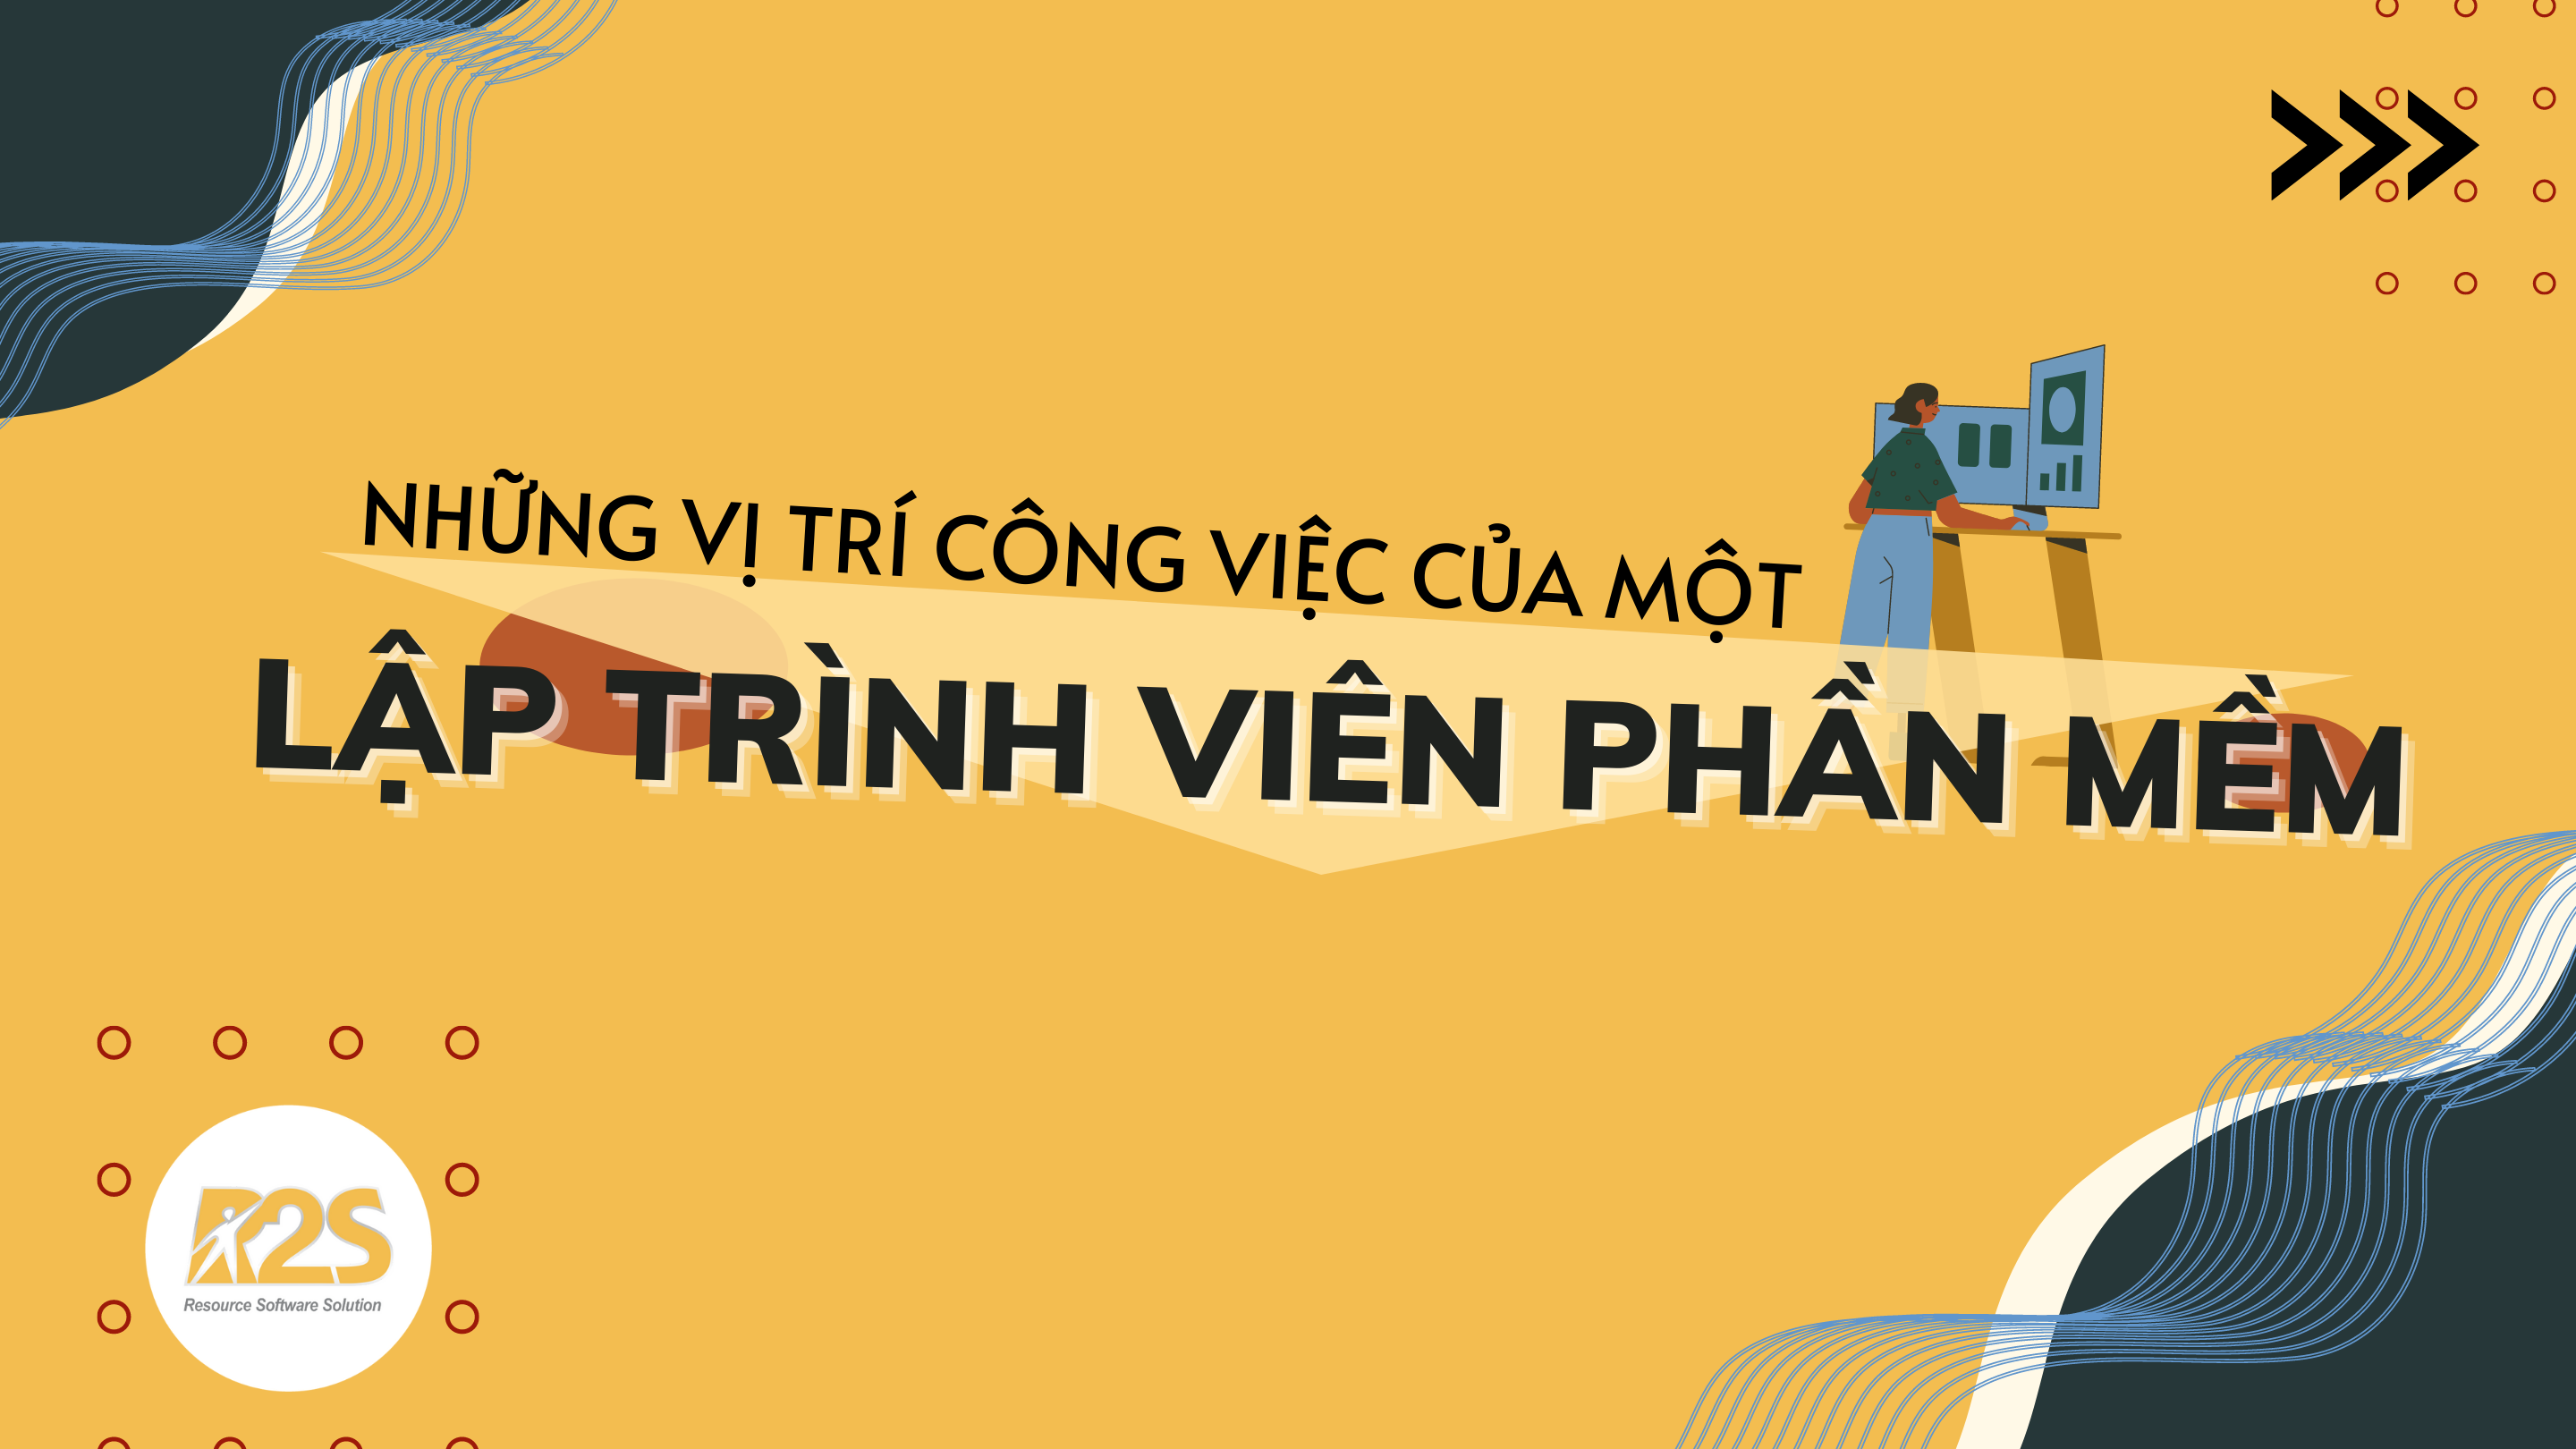 NHUNG-VI-TRI-CONG-VIEC-CUA-MOT-LAP-TRINH-VIEN-PHAN-MEM-1